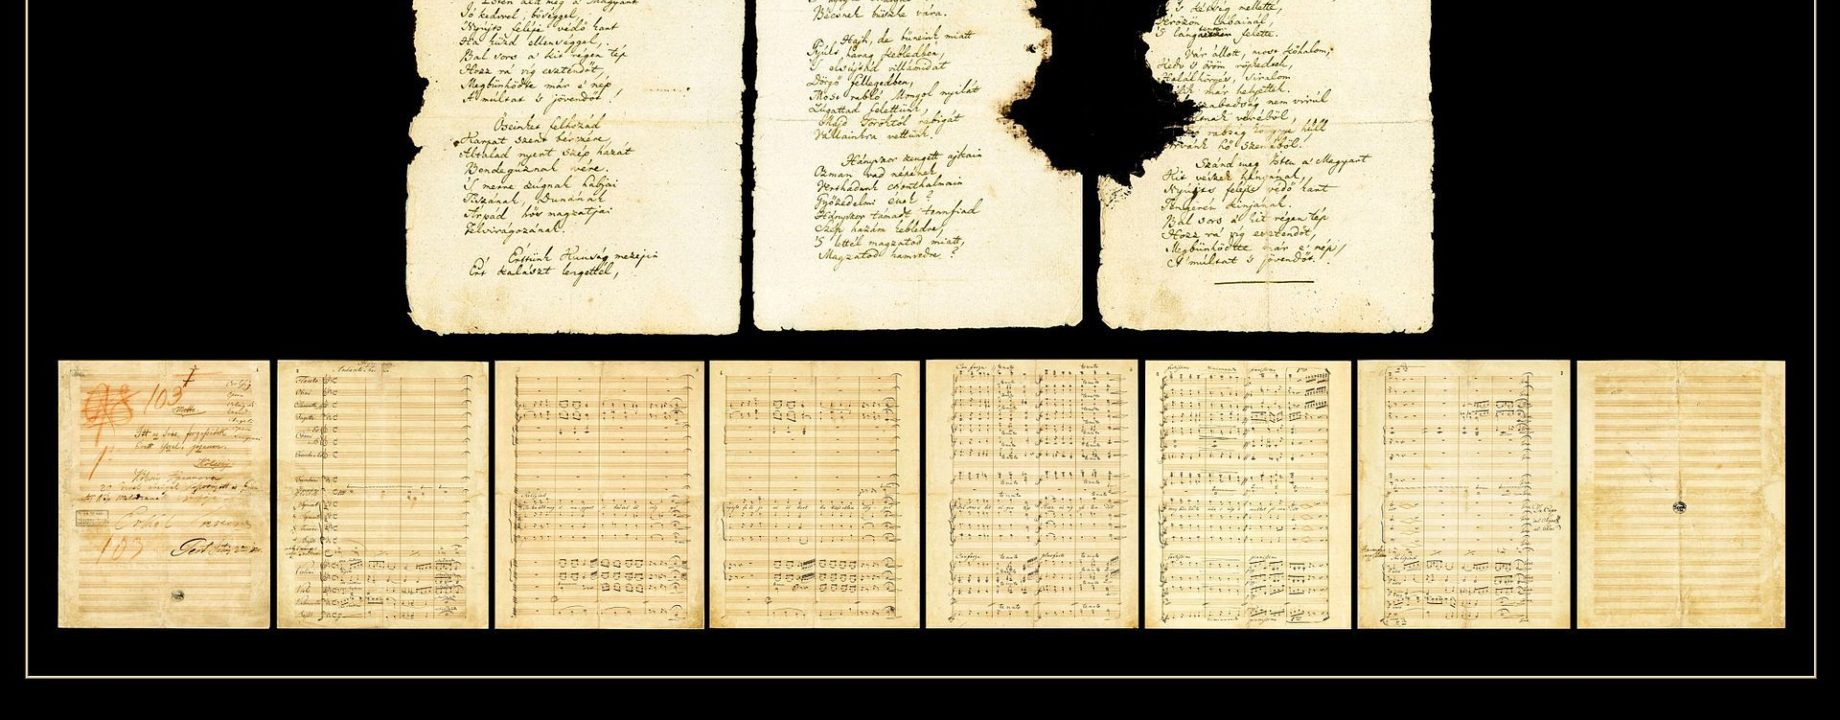 1920px Himnusz kézirata és kottája